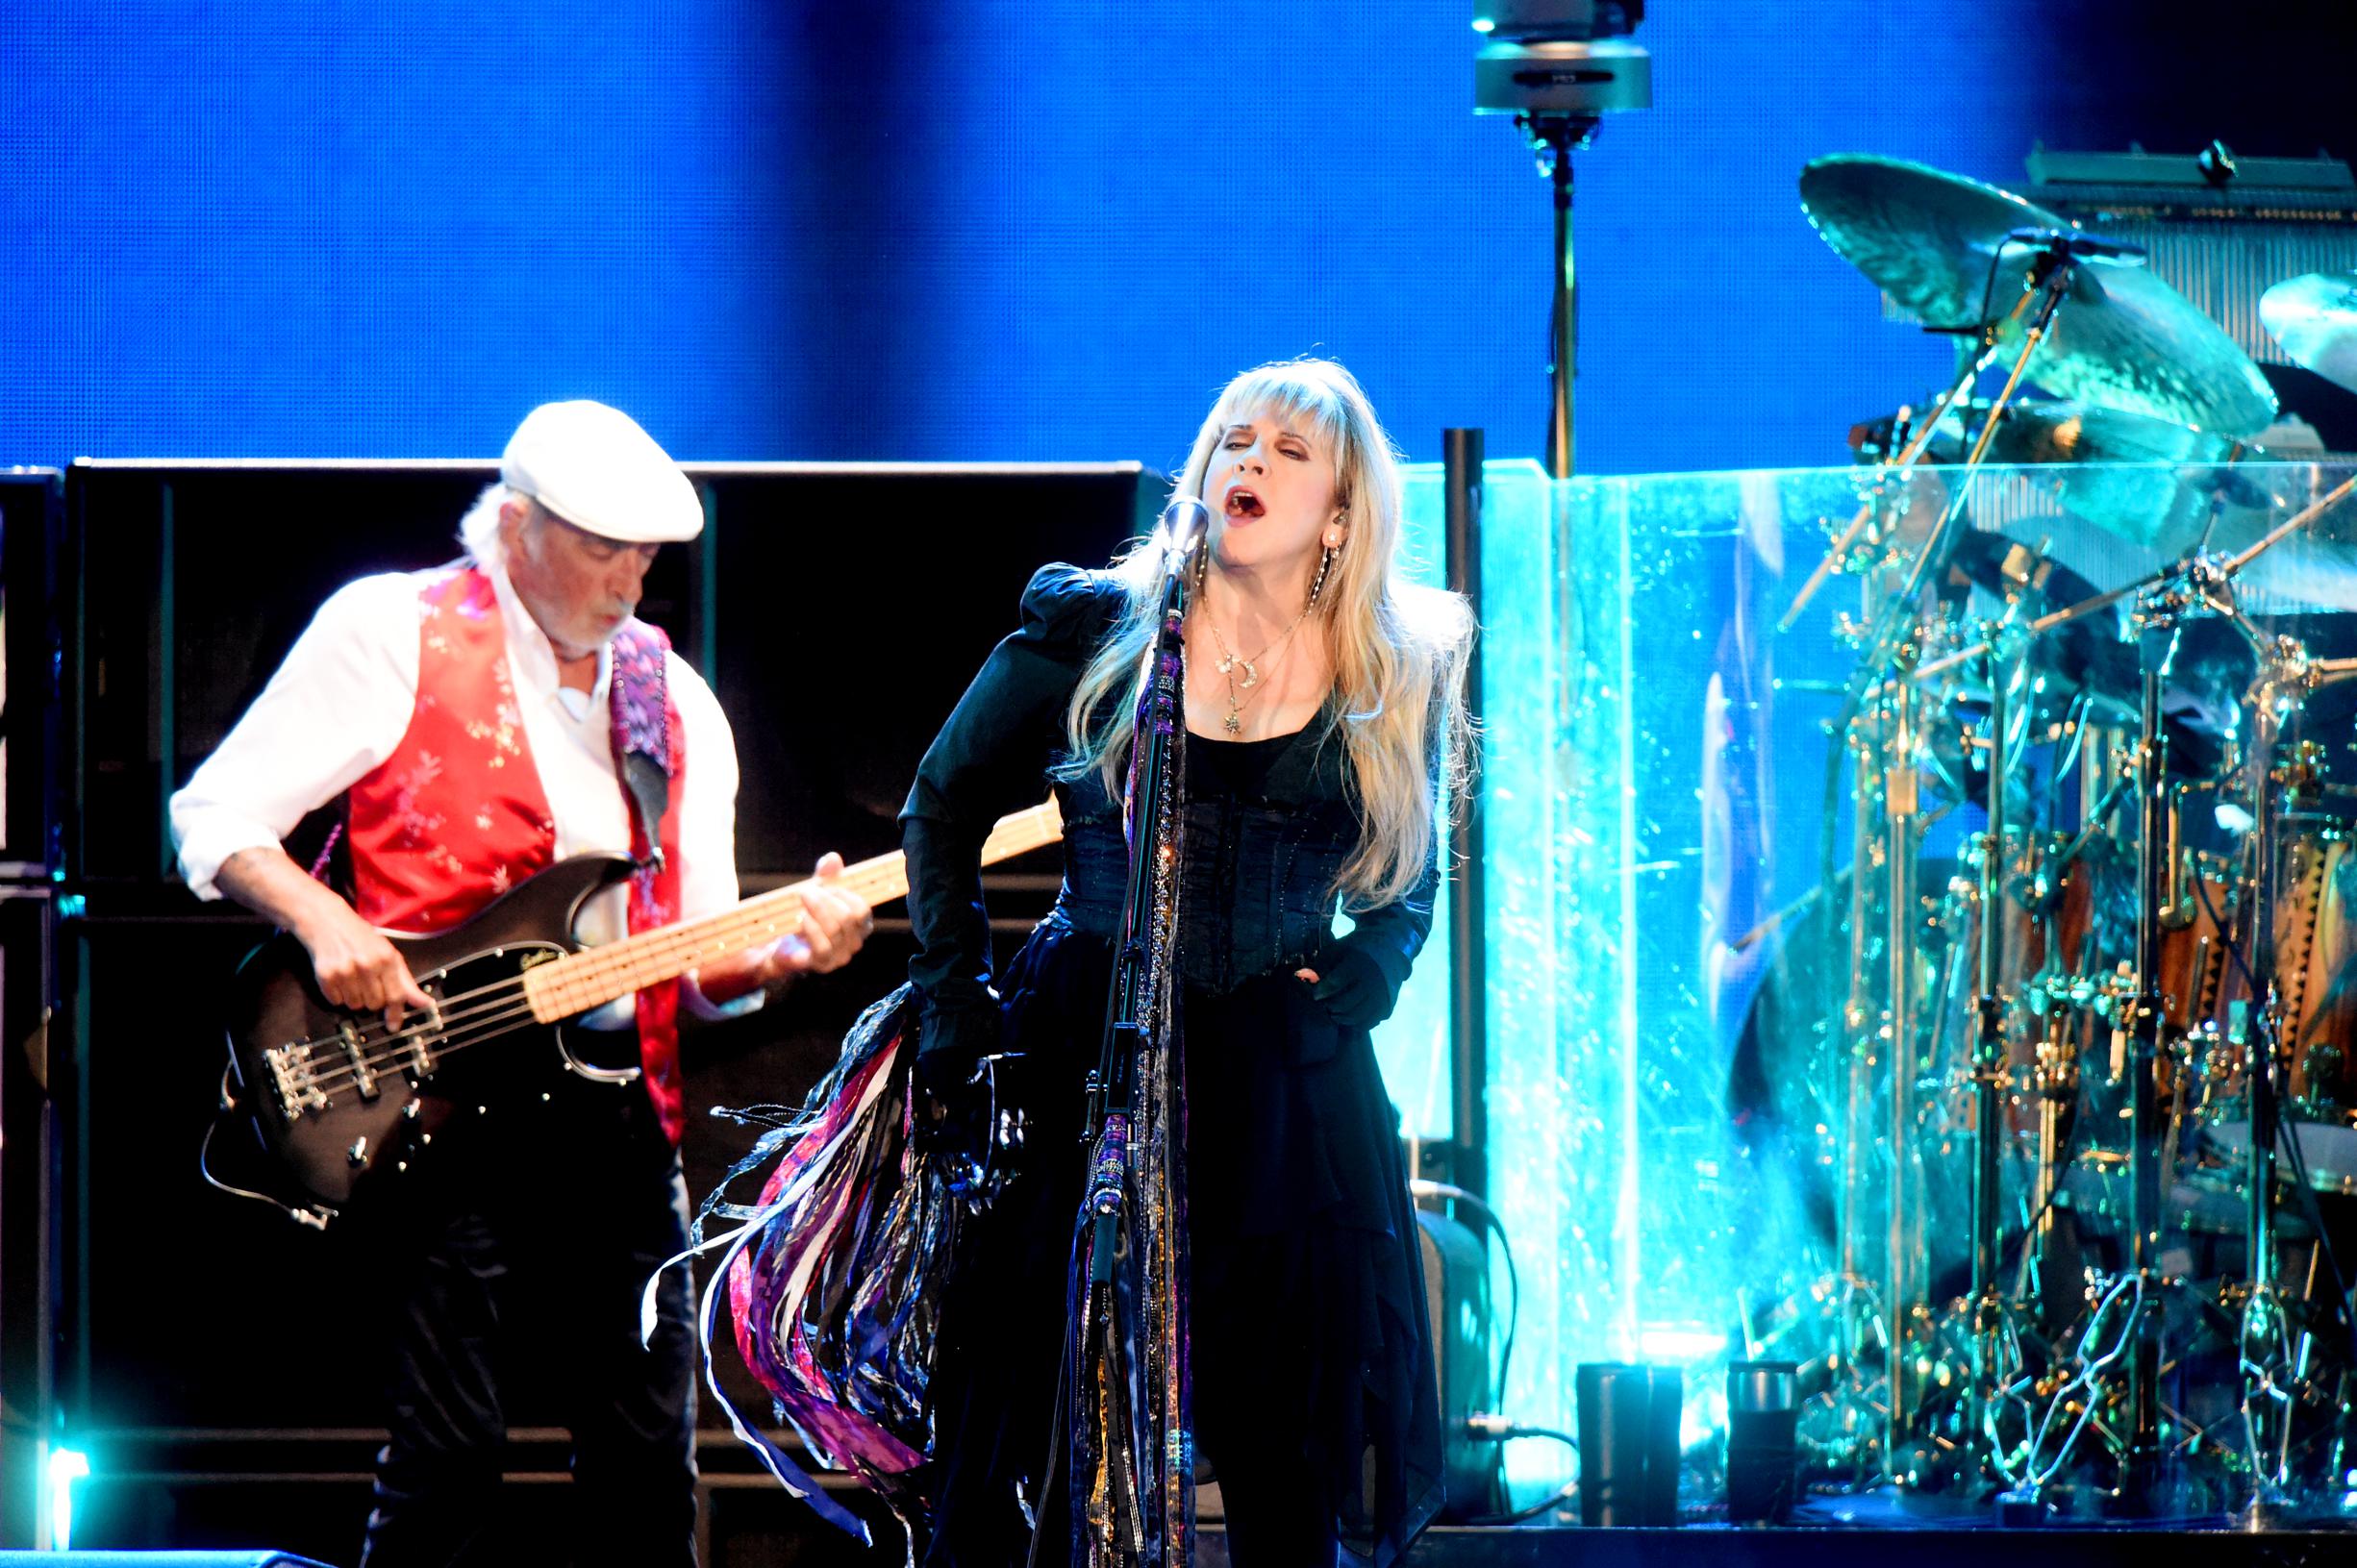 Fleetwood Mac ведет слушателей к «Timeless» в Studio Brussel, одновременно выбирая слушателей Radio 2 Queen.